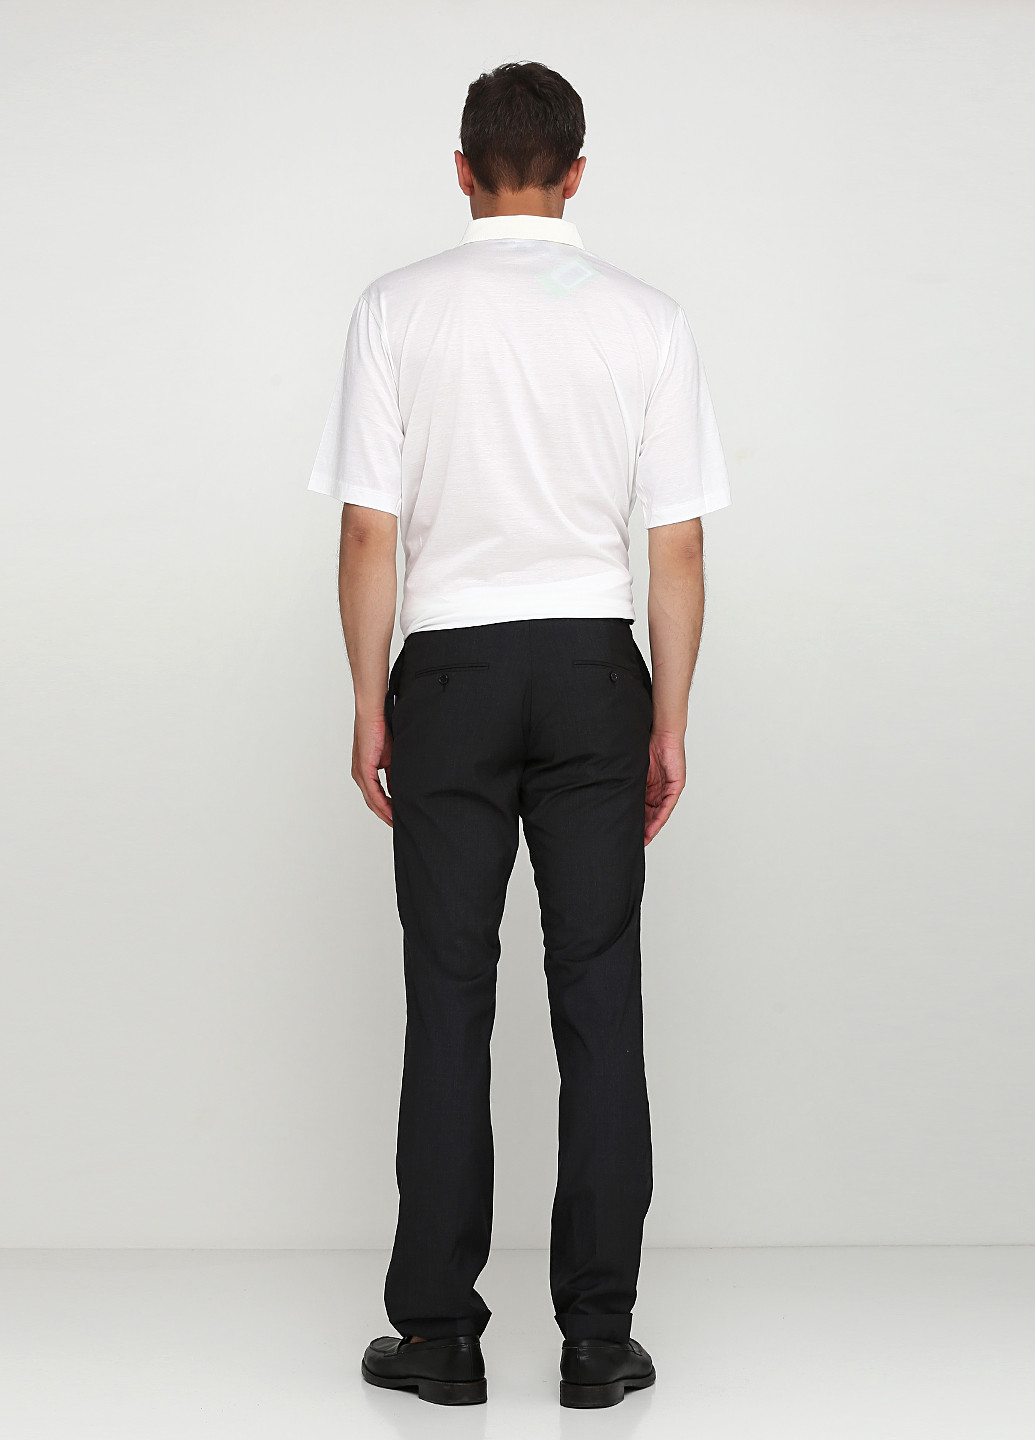 Темно-серые кэжуал демисезонные со средней талией брюки Ralph Lauren